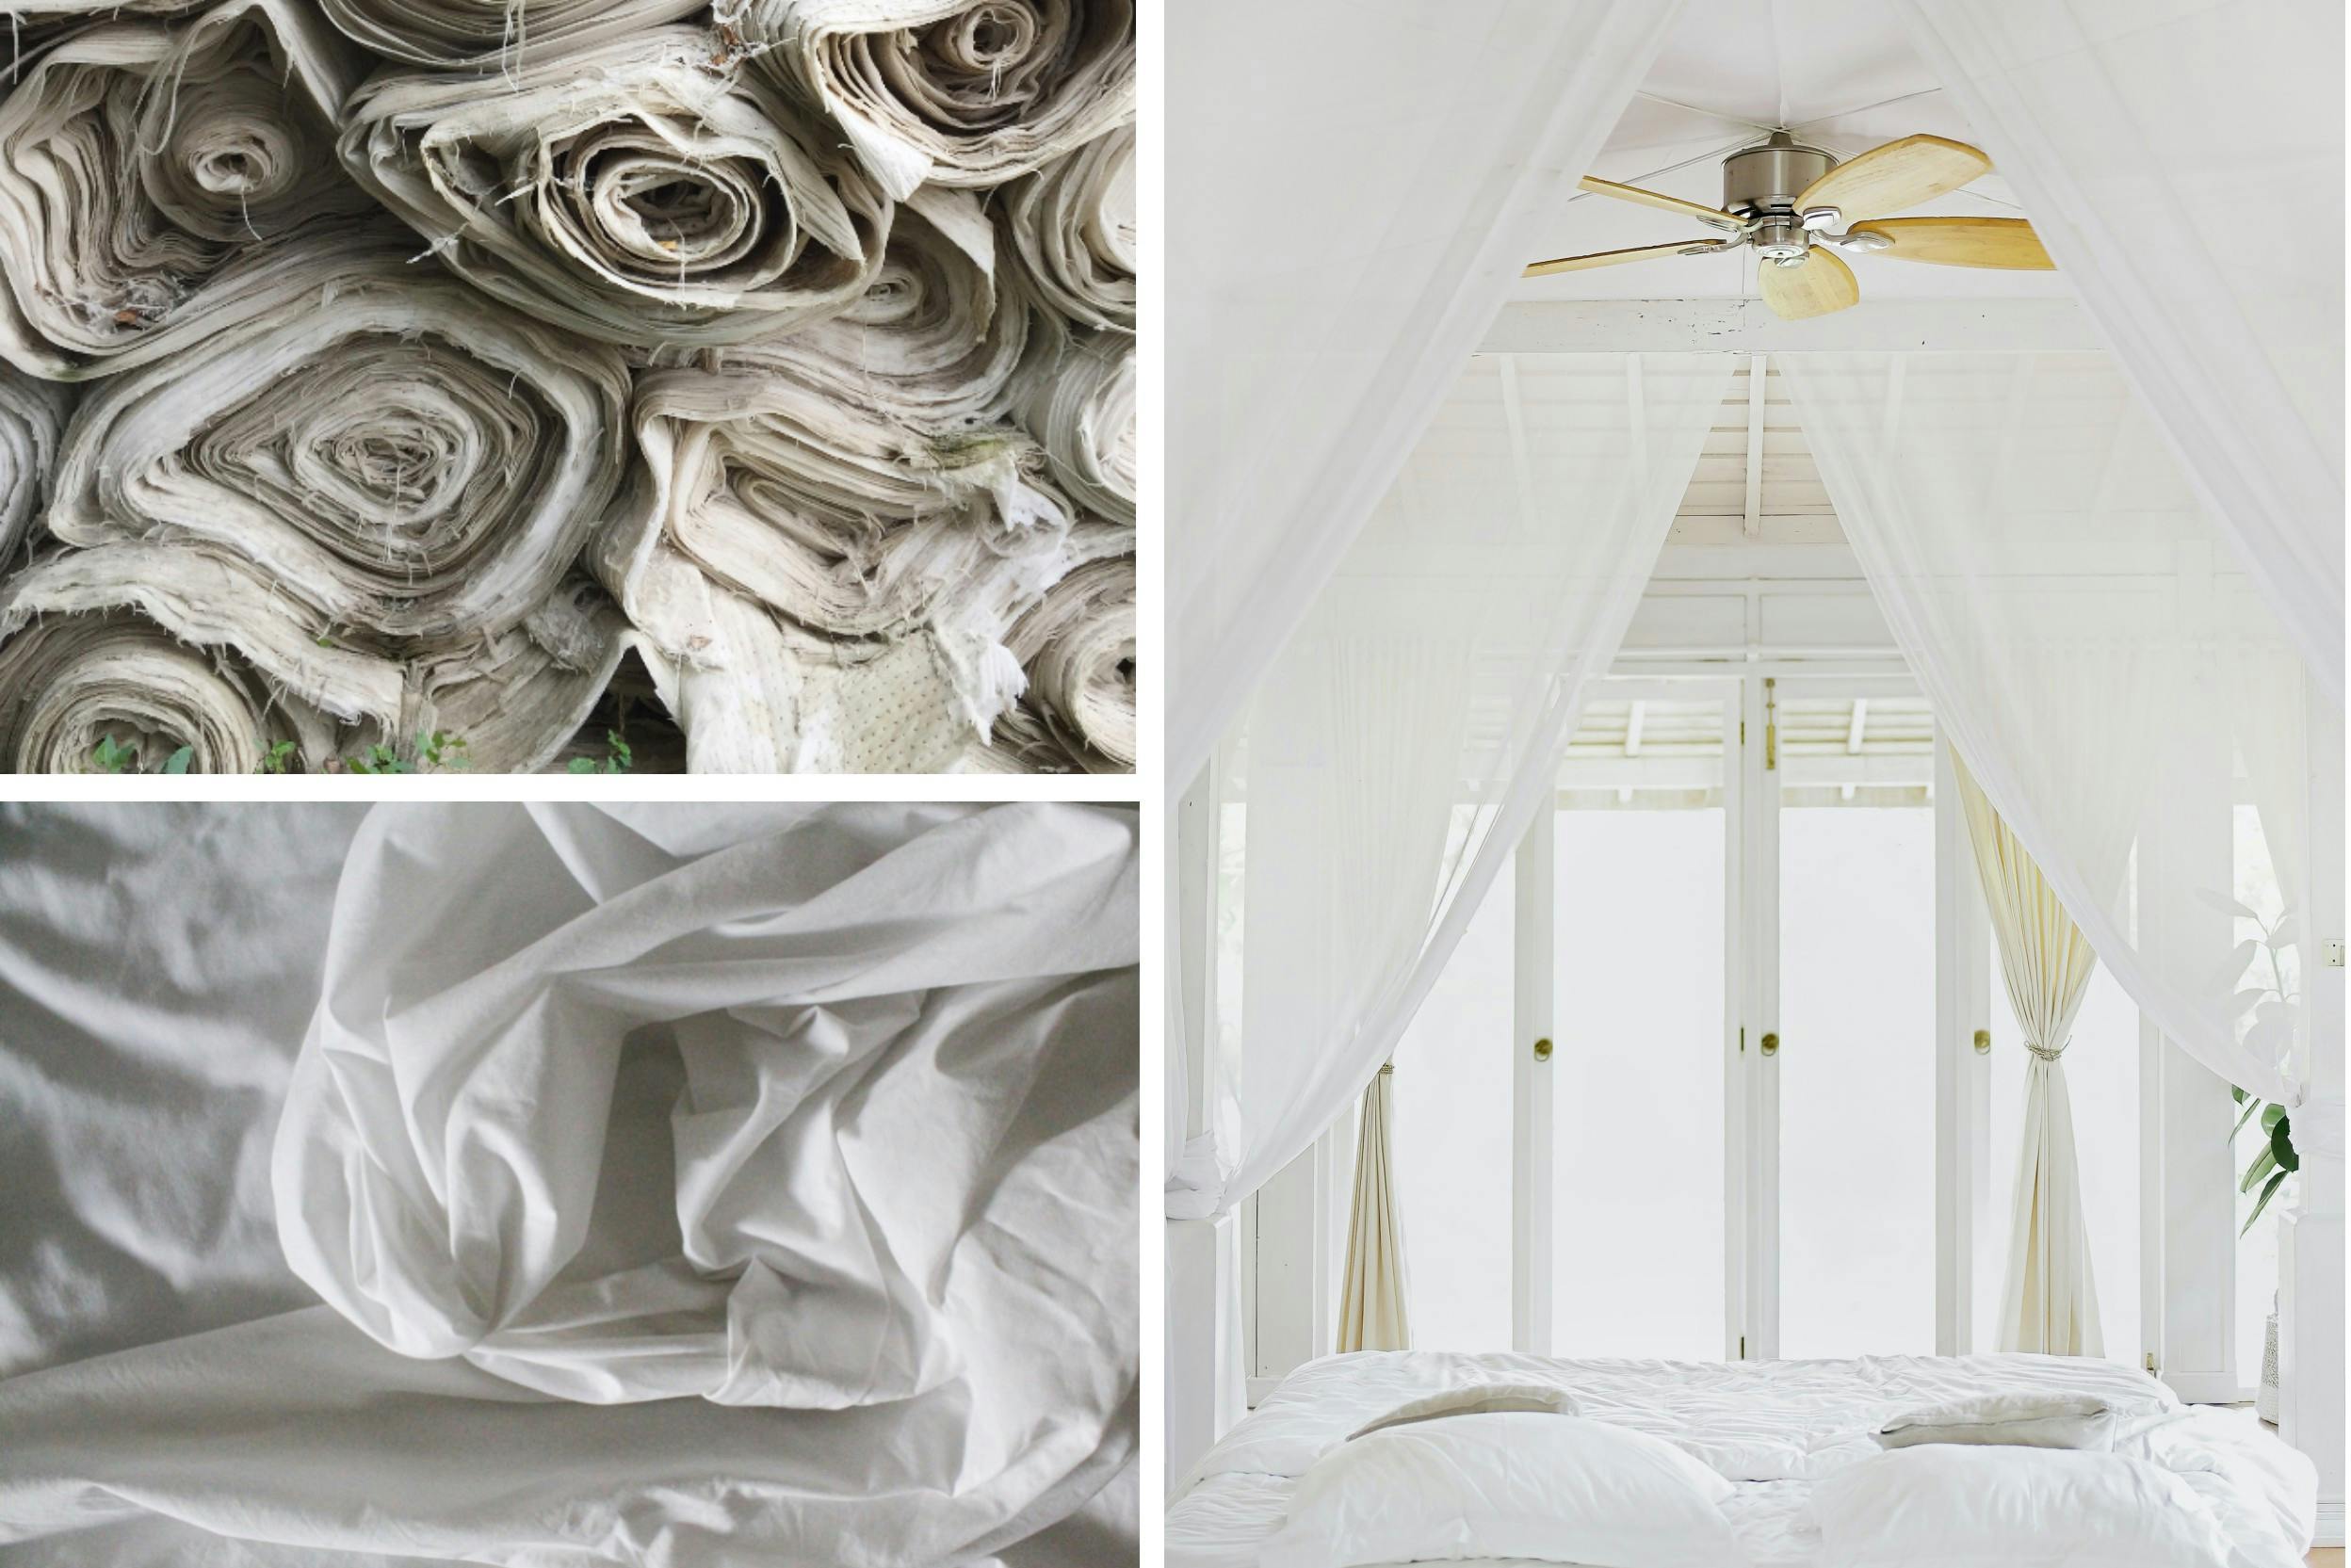 Combo de trois photos : L'une est de rouleaux de tissu blanc, la seconde est de tissu blanc froissé, la troisième est d'un lit à baldaquins entièrement blanc, avec un ventilateur au-dessus du lit